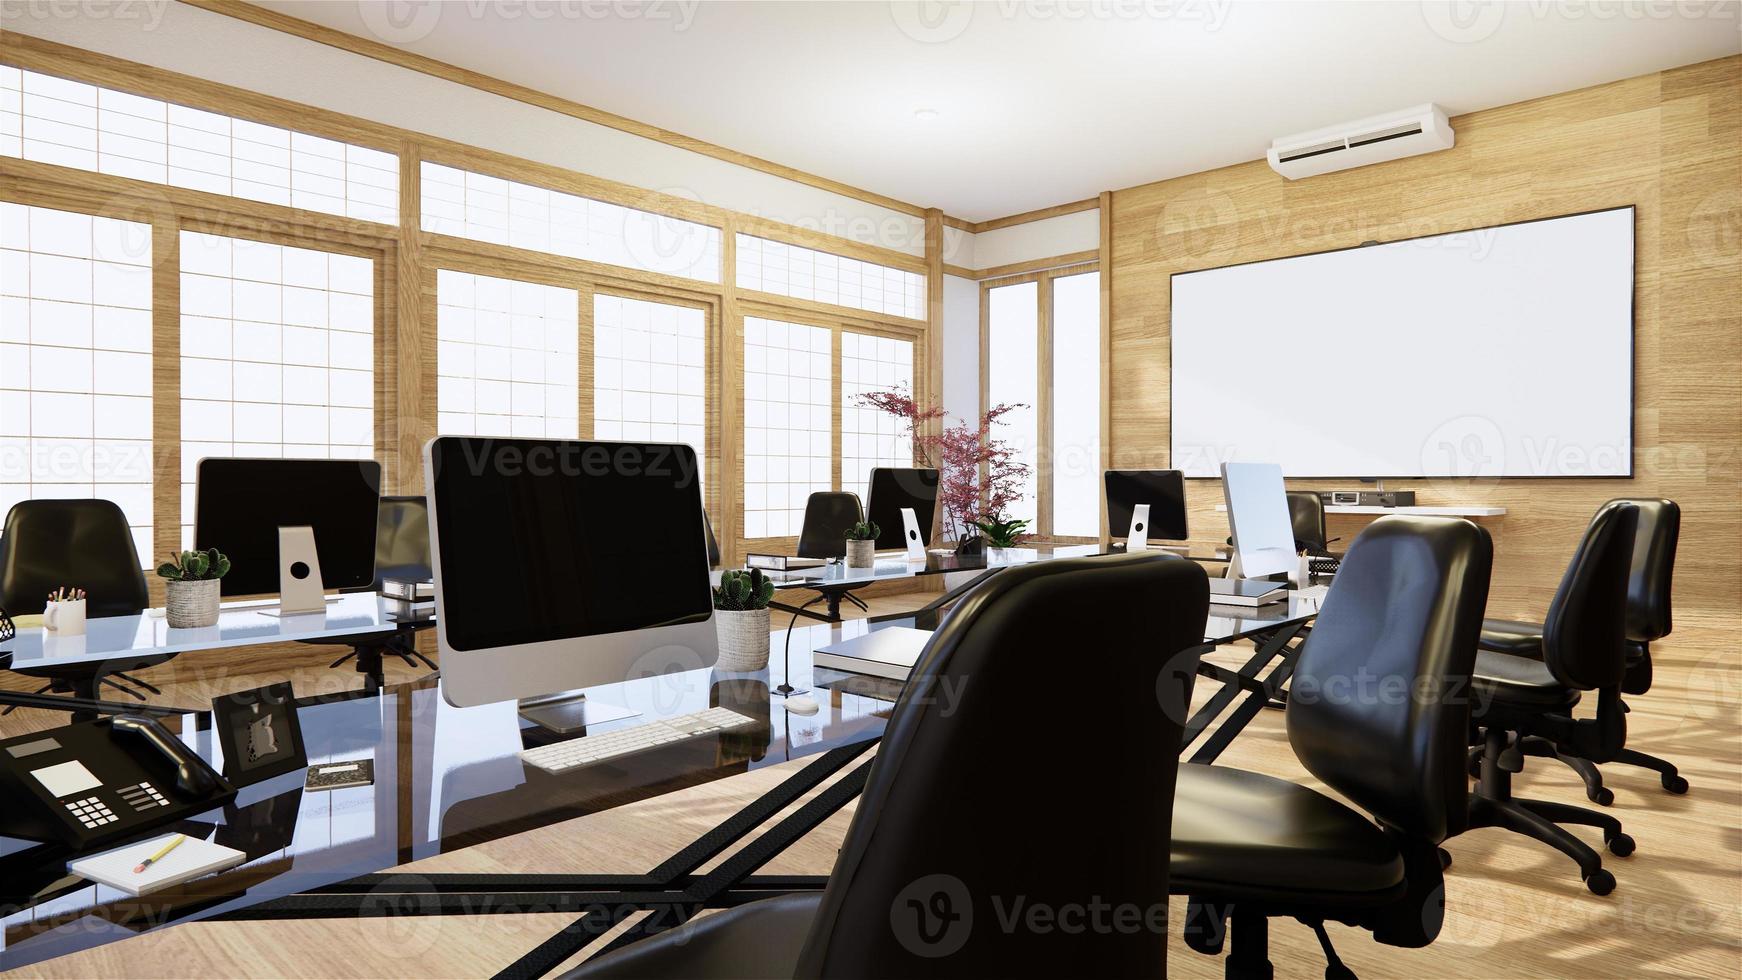 ufficio affari - bella sala riunioni japanroom e tavolo da conferenza, in stile moderno. rendering 3d foto